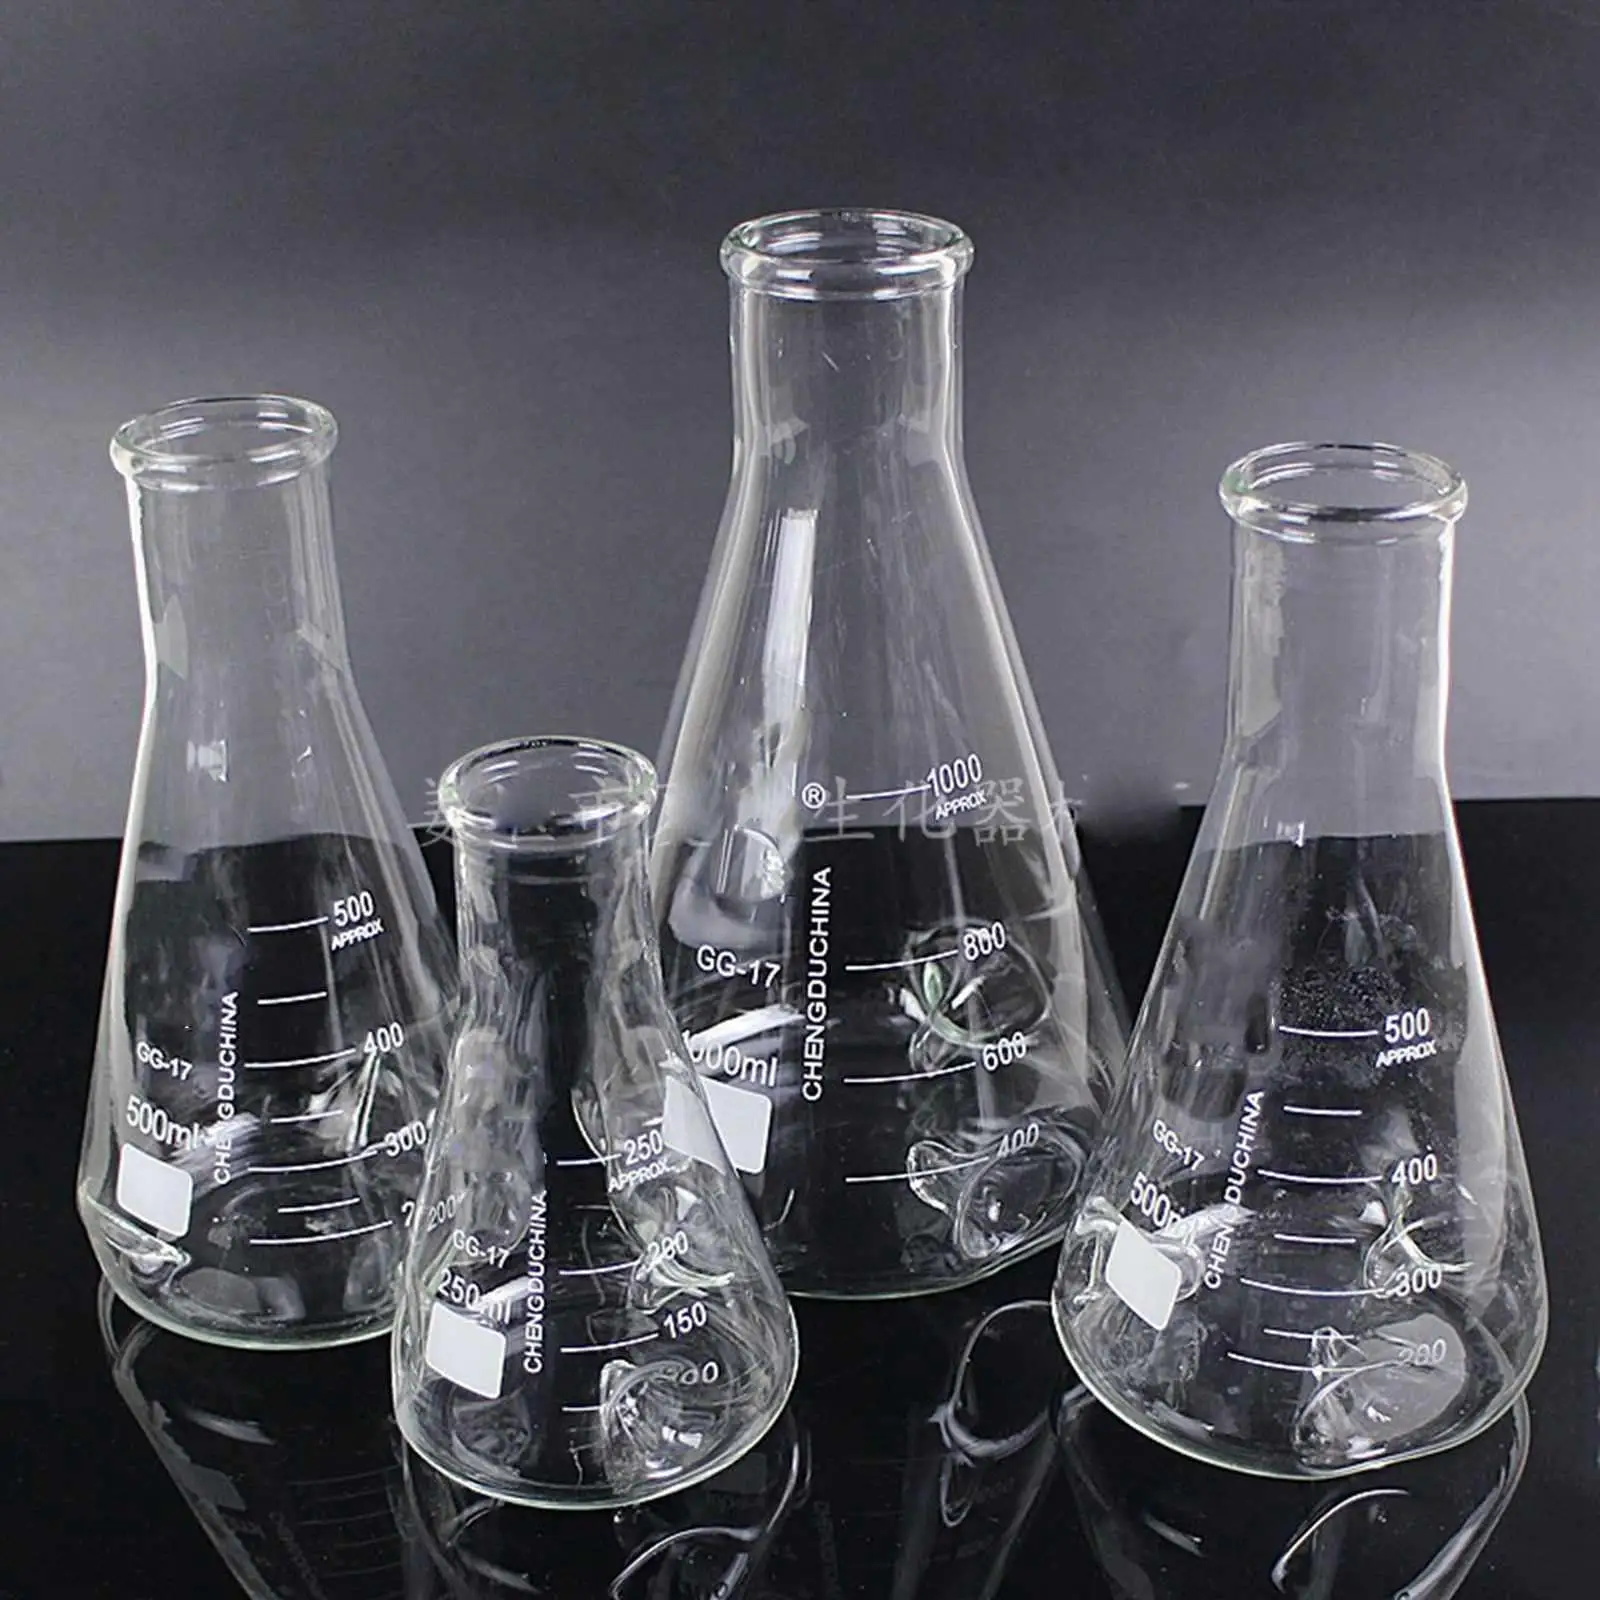 Günstige 2000ml 3 Dornen GG17 Glas Schallwand Schütteln Konische Erlenmeye Glaskolben Boro Glas Labor Glaswaren